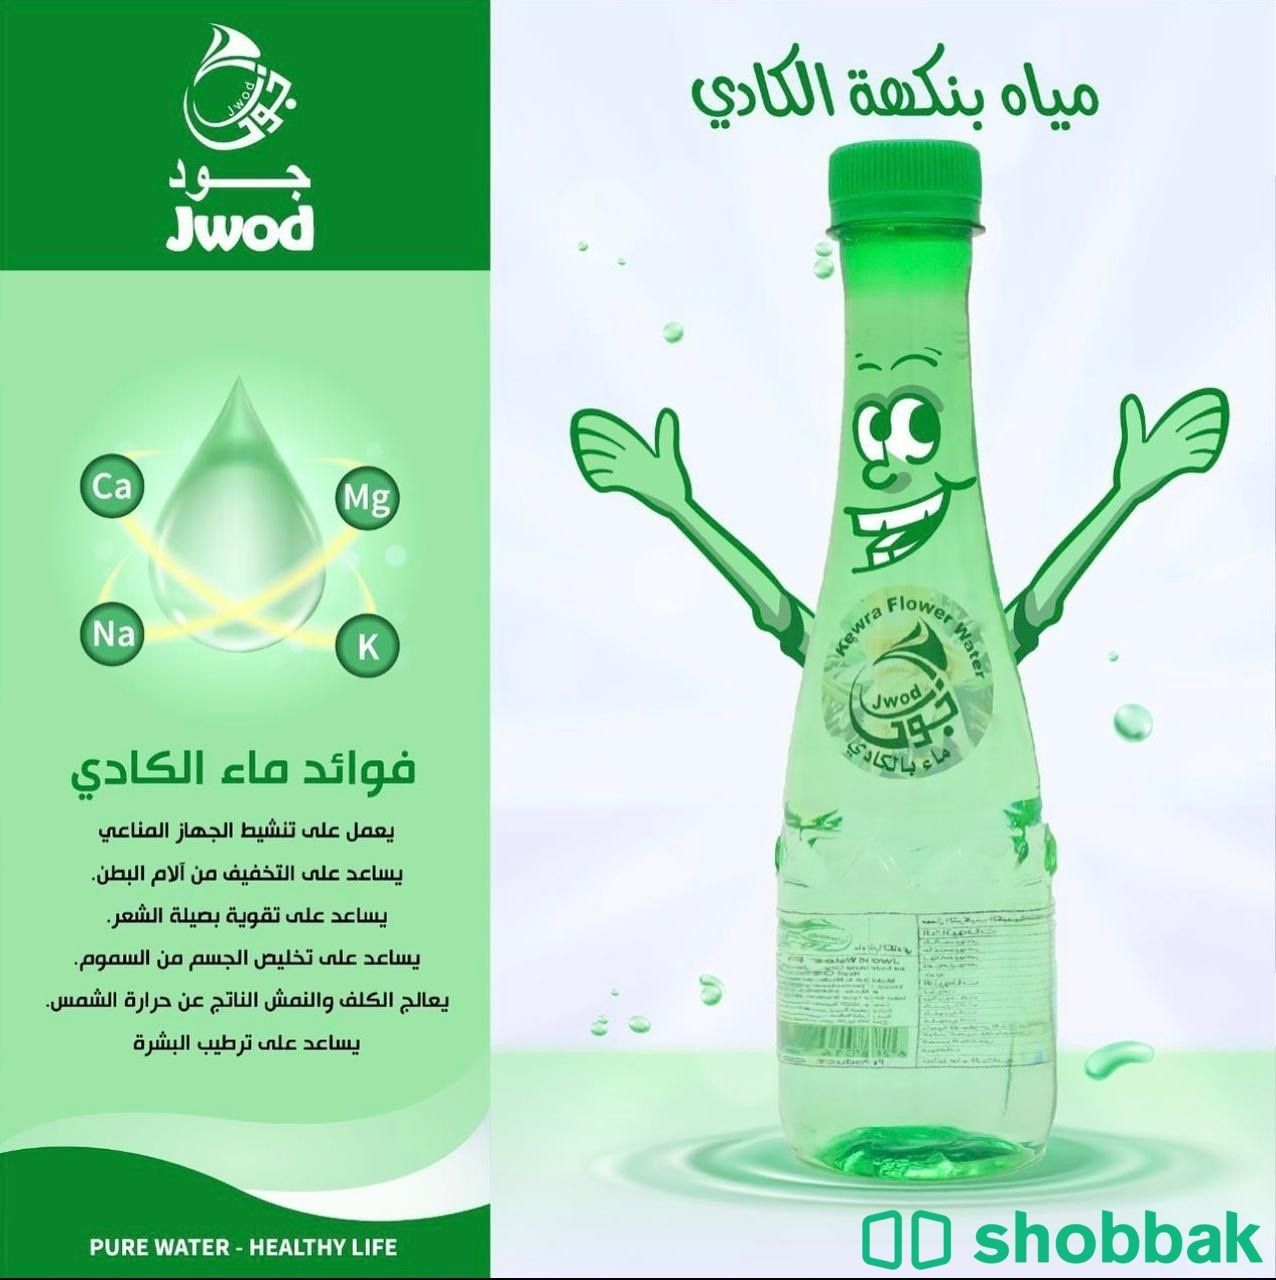 مياه جود بالنكهات Shobbak Saudi Arabia